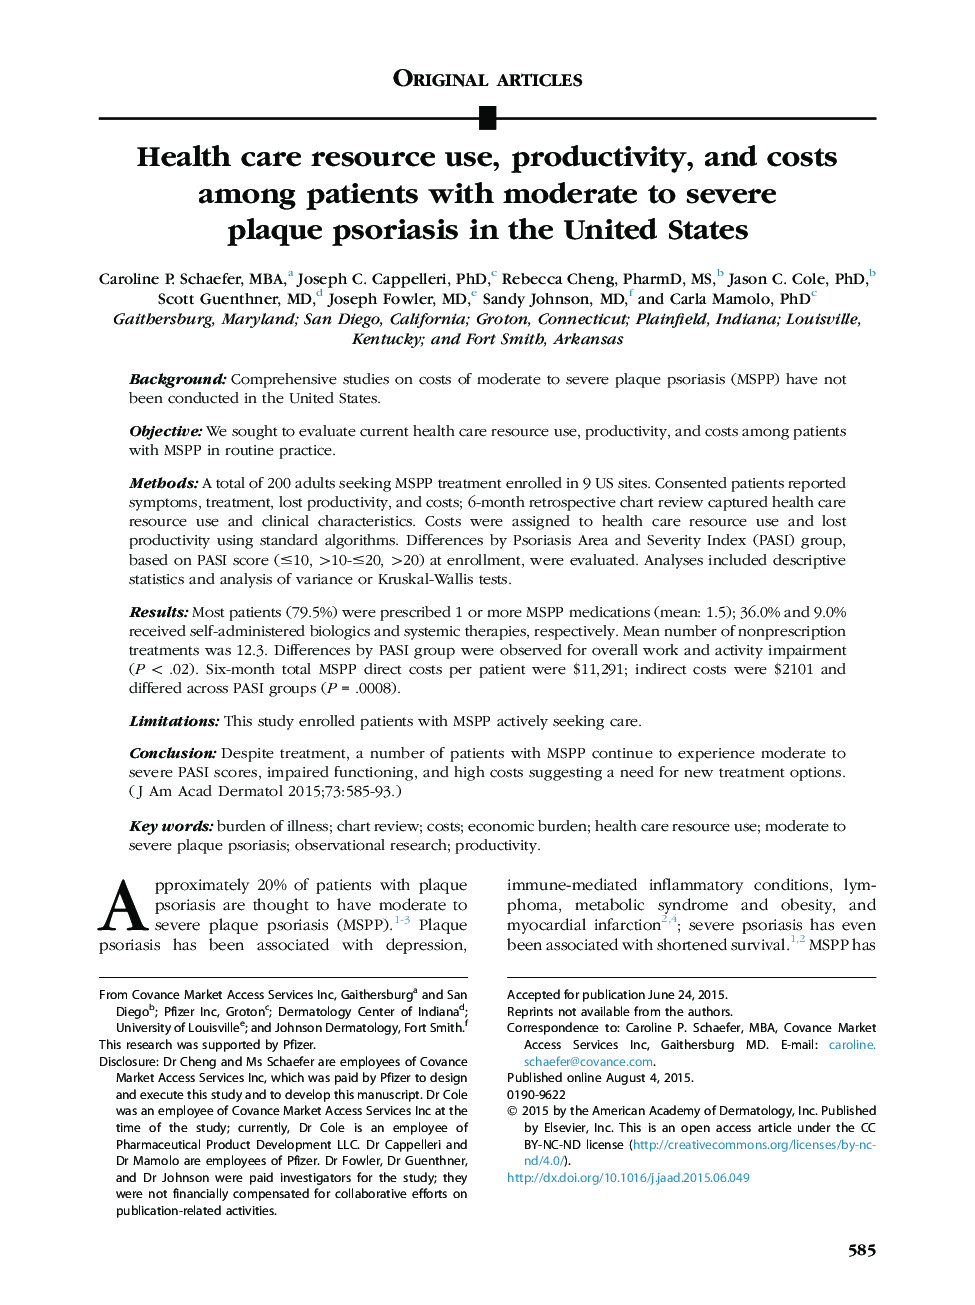 مقاله اصلی استفاده از منبع مراقبت بهداشتی، بهره وری و هزینه در بیماران مبتلا به پسوریازیس پلاک متوسط ​​تا شدید در ایالات متحده 